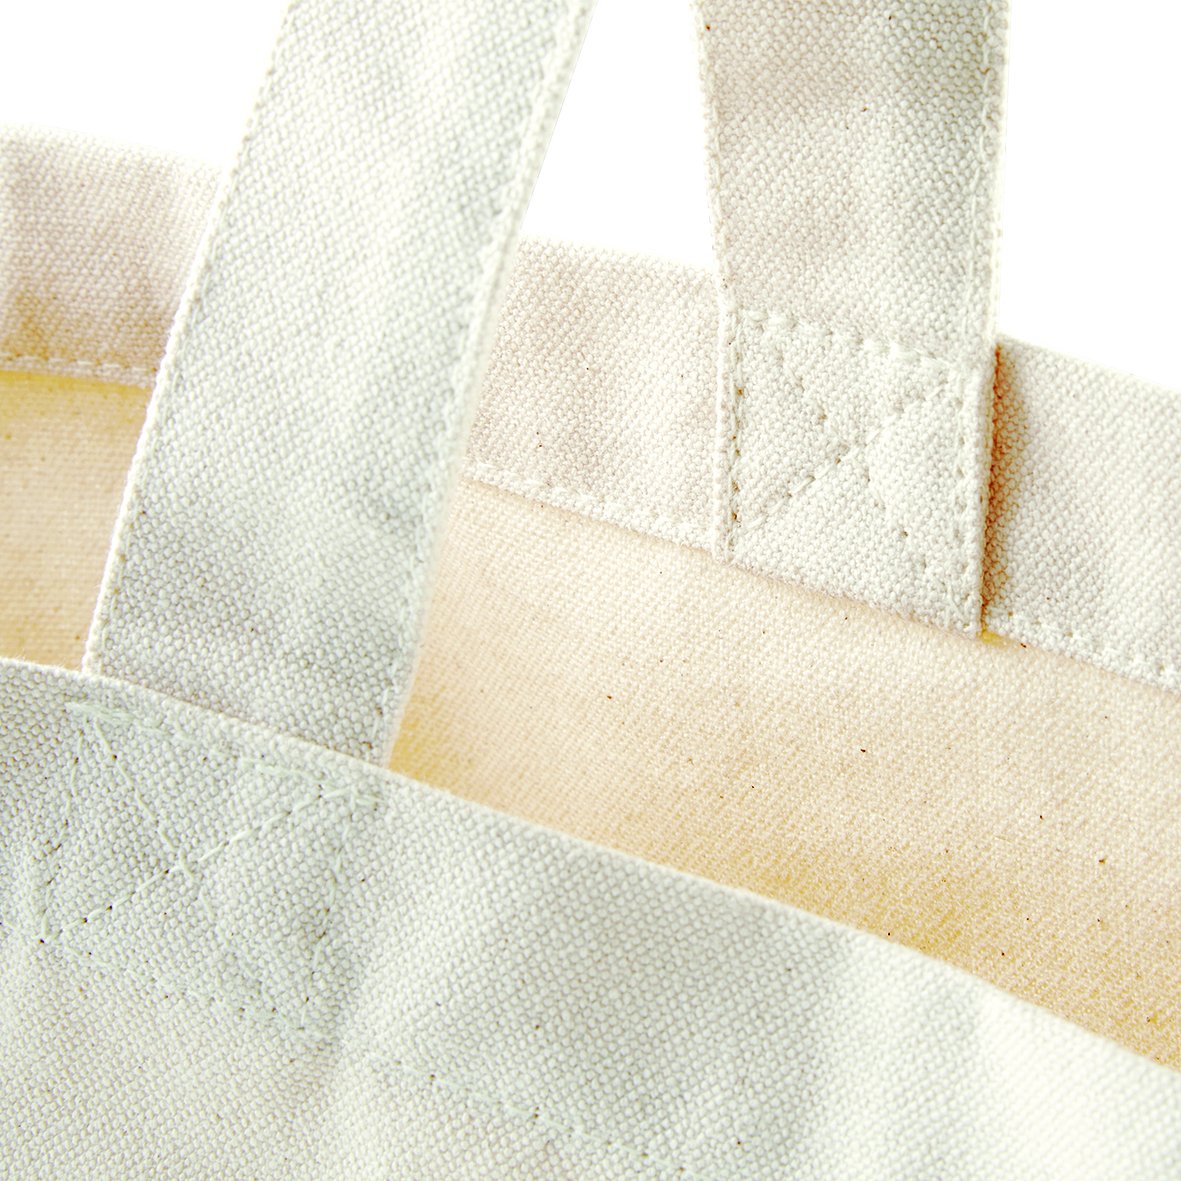 Fairtrade Cotton Shopping Bag Natural